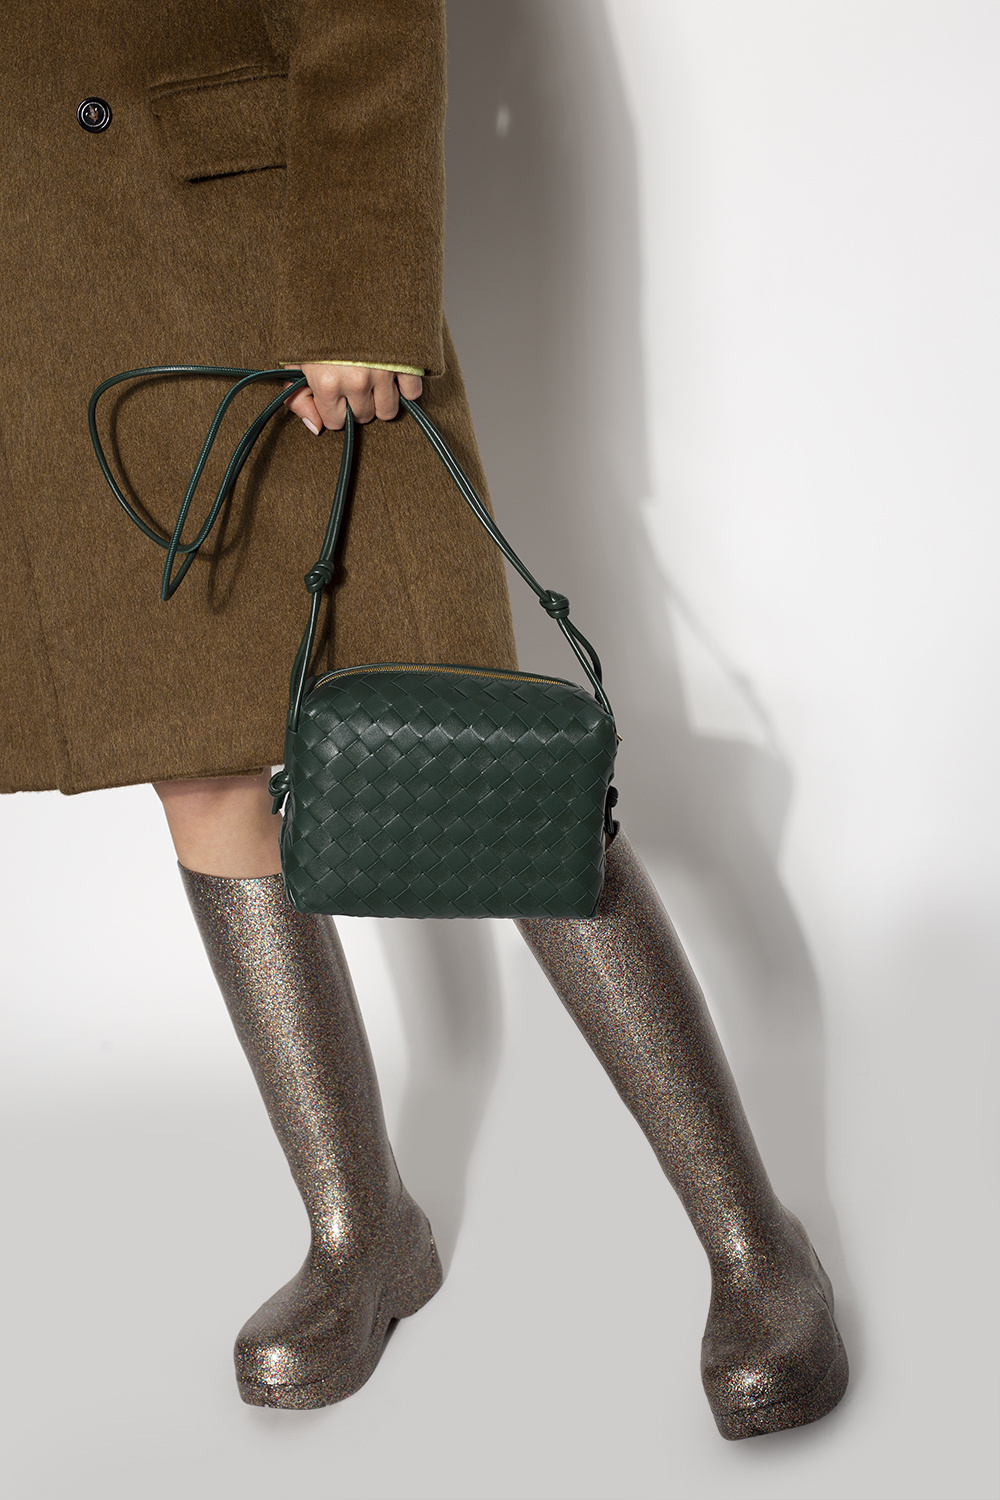 Bottega Veneta 'Loop' shoulder bag, Women's Bags